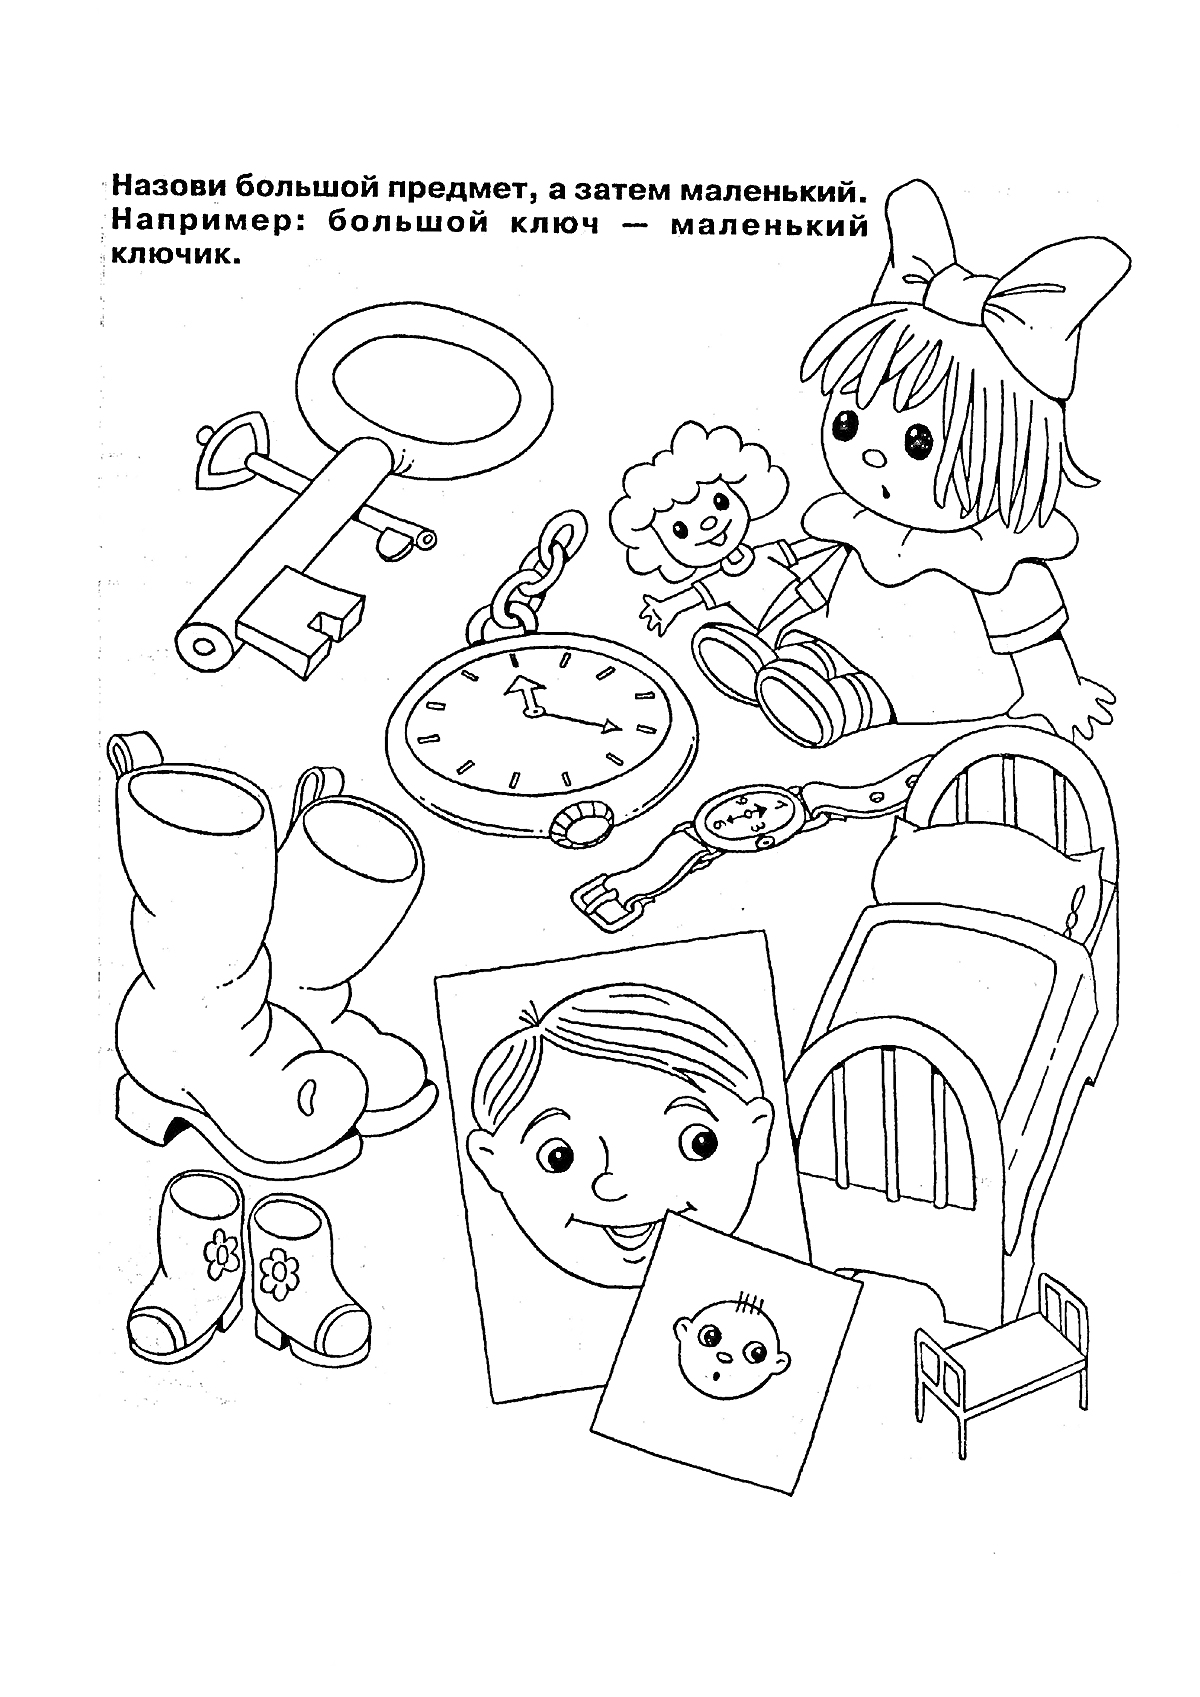 Большой ключ, маленький ключик, кукла, очки, часы, детская кровать, нарисованное лицо, конверт с маленьким лицом, резиновые сапоги